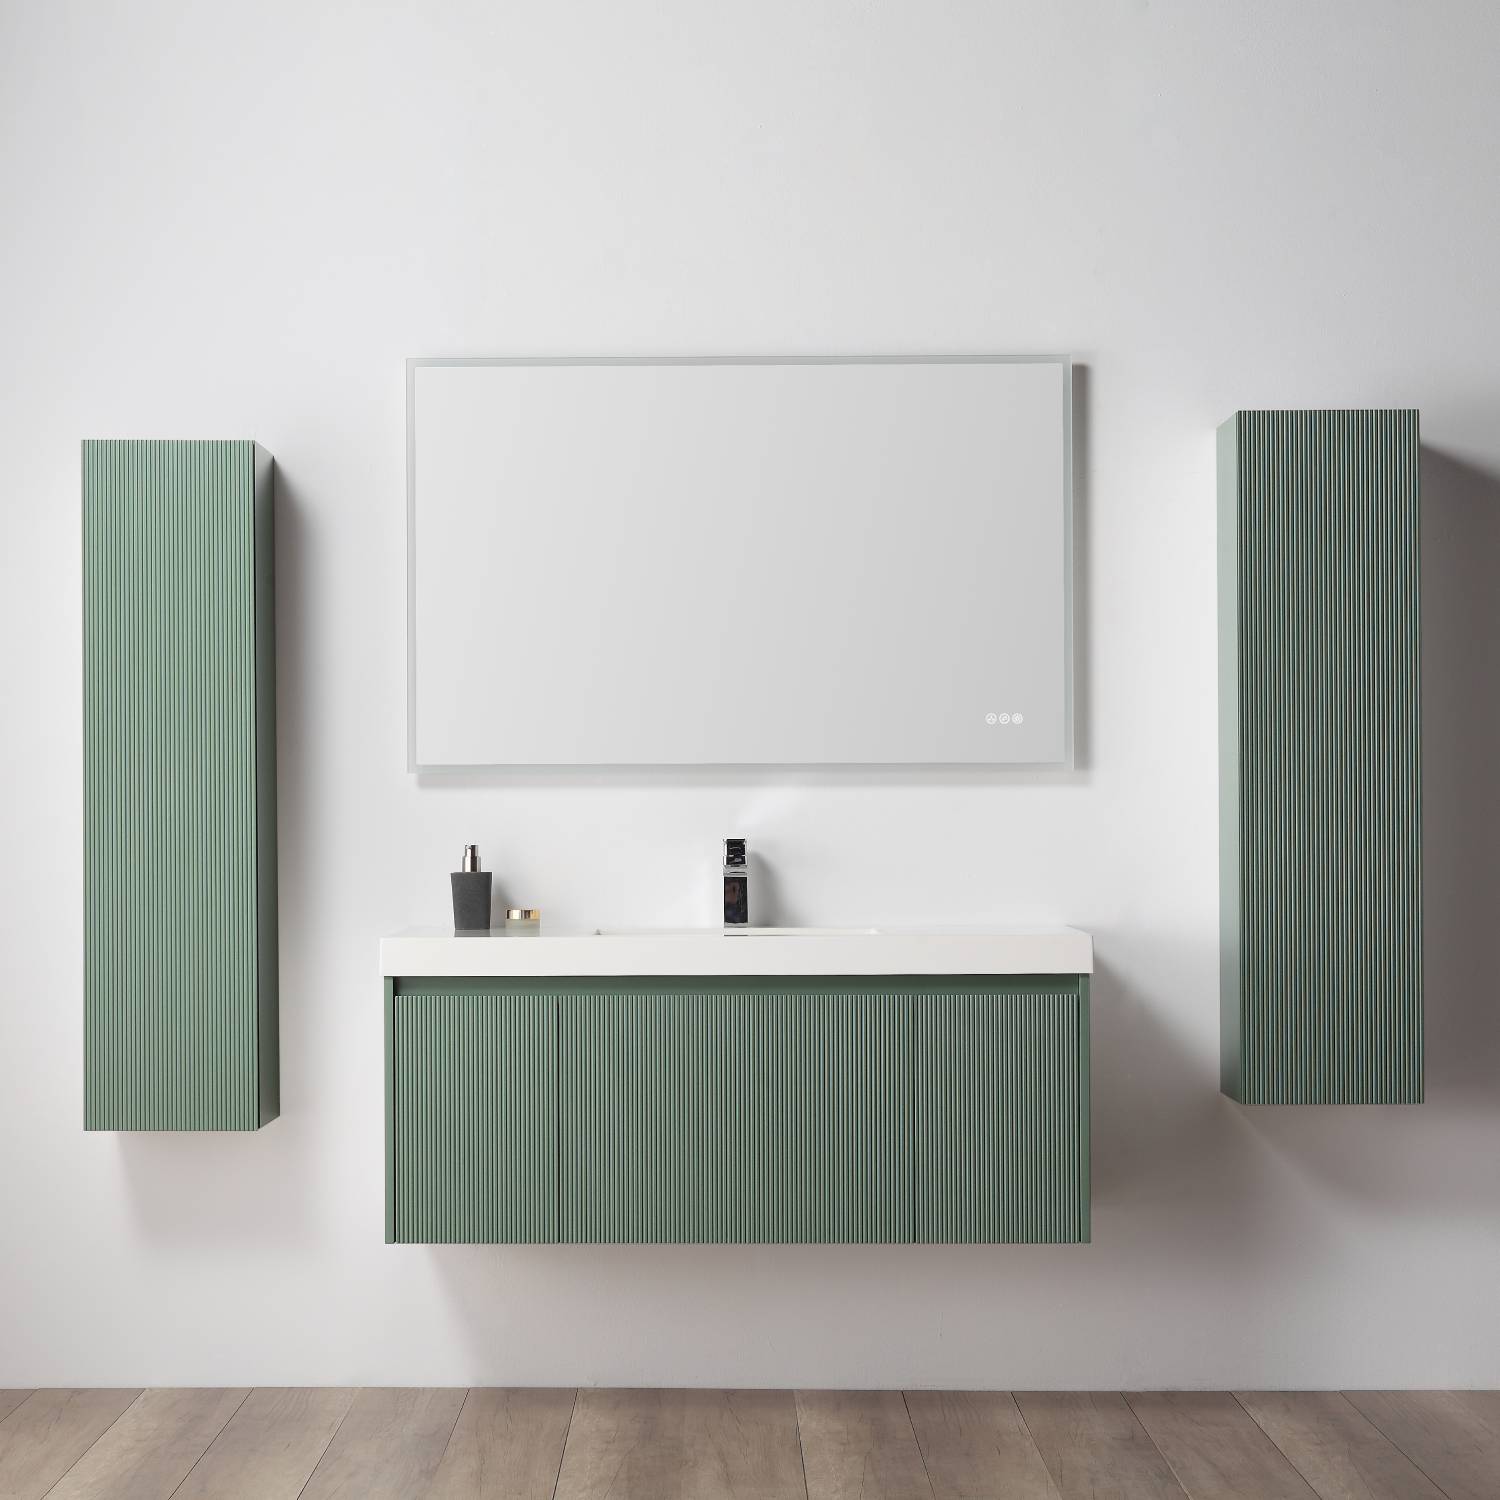 Positano 48" Double Bathroom Vanity  #size_48" Double  #color_aventurine green